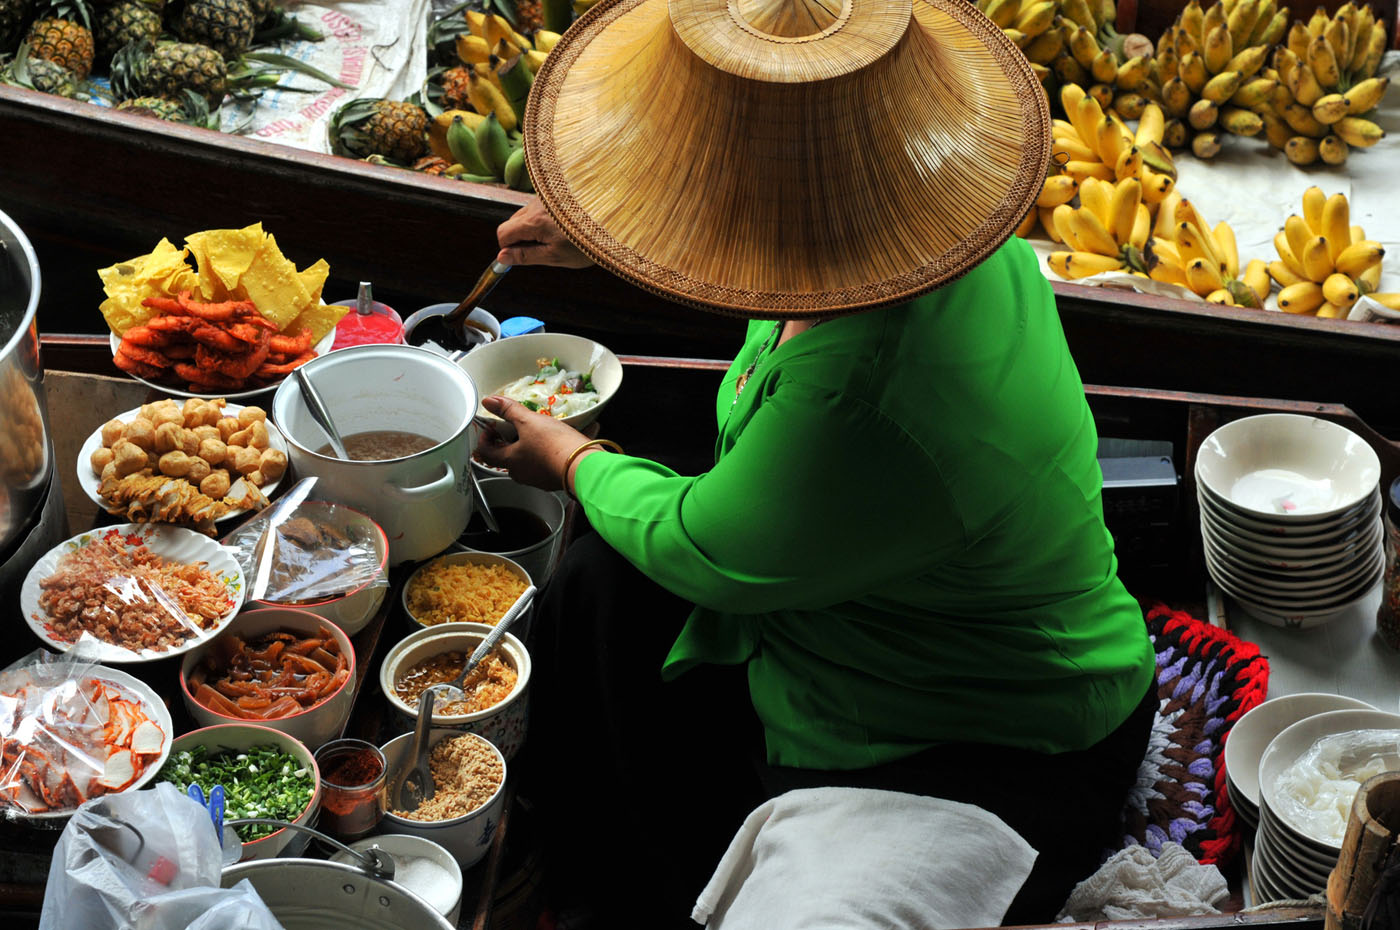 Cuisine thaïlandaise dans un marché local 